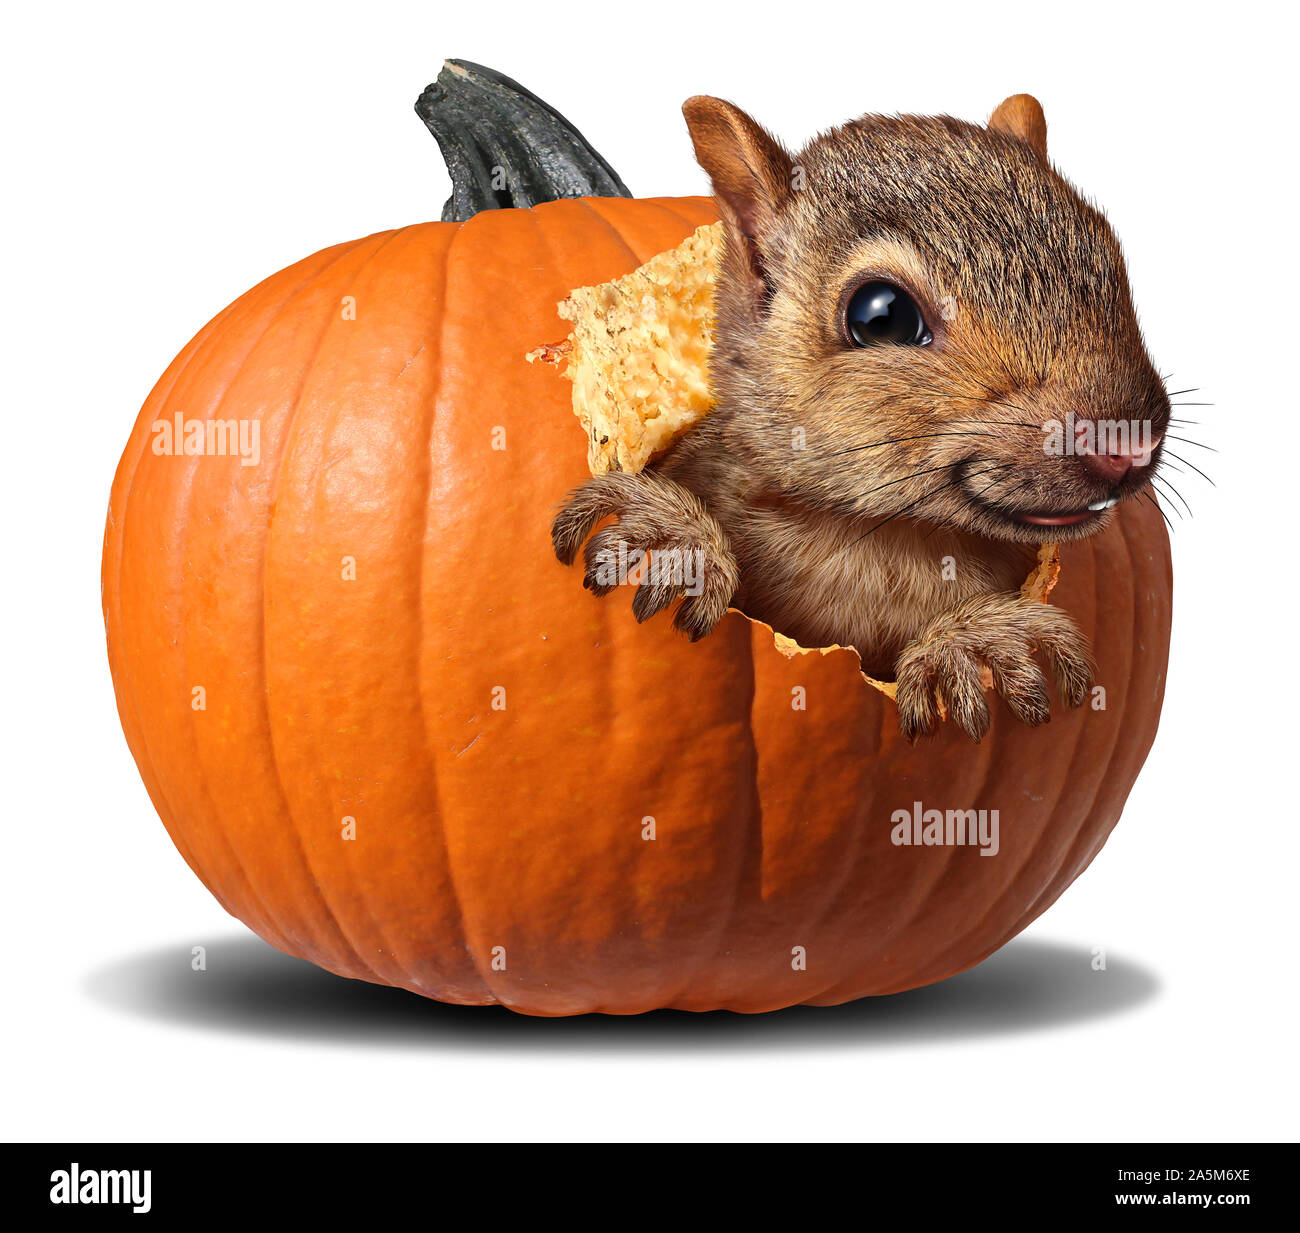 Carino scoiattolo zucca mangiare un arancio autunno squash come un divertente di ringraziamento o di halloween animale selvatico. Foto Stock